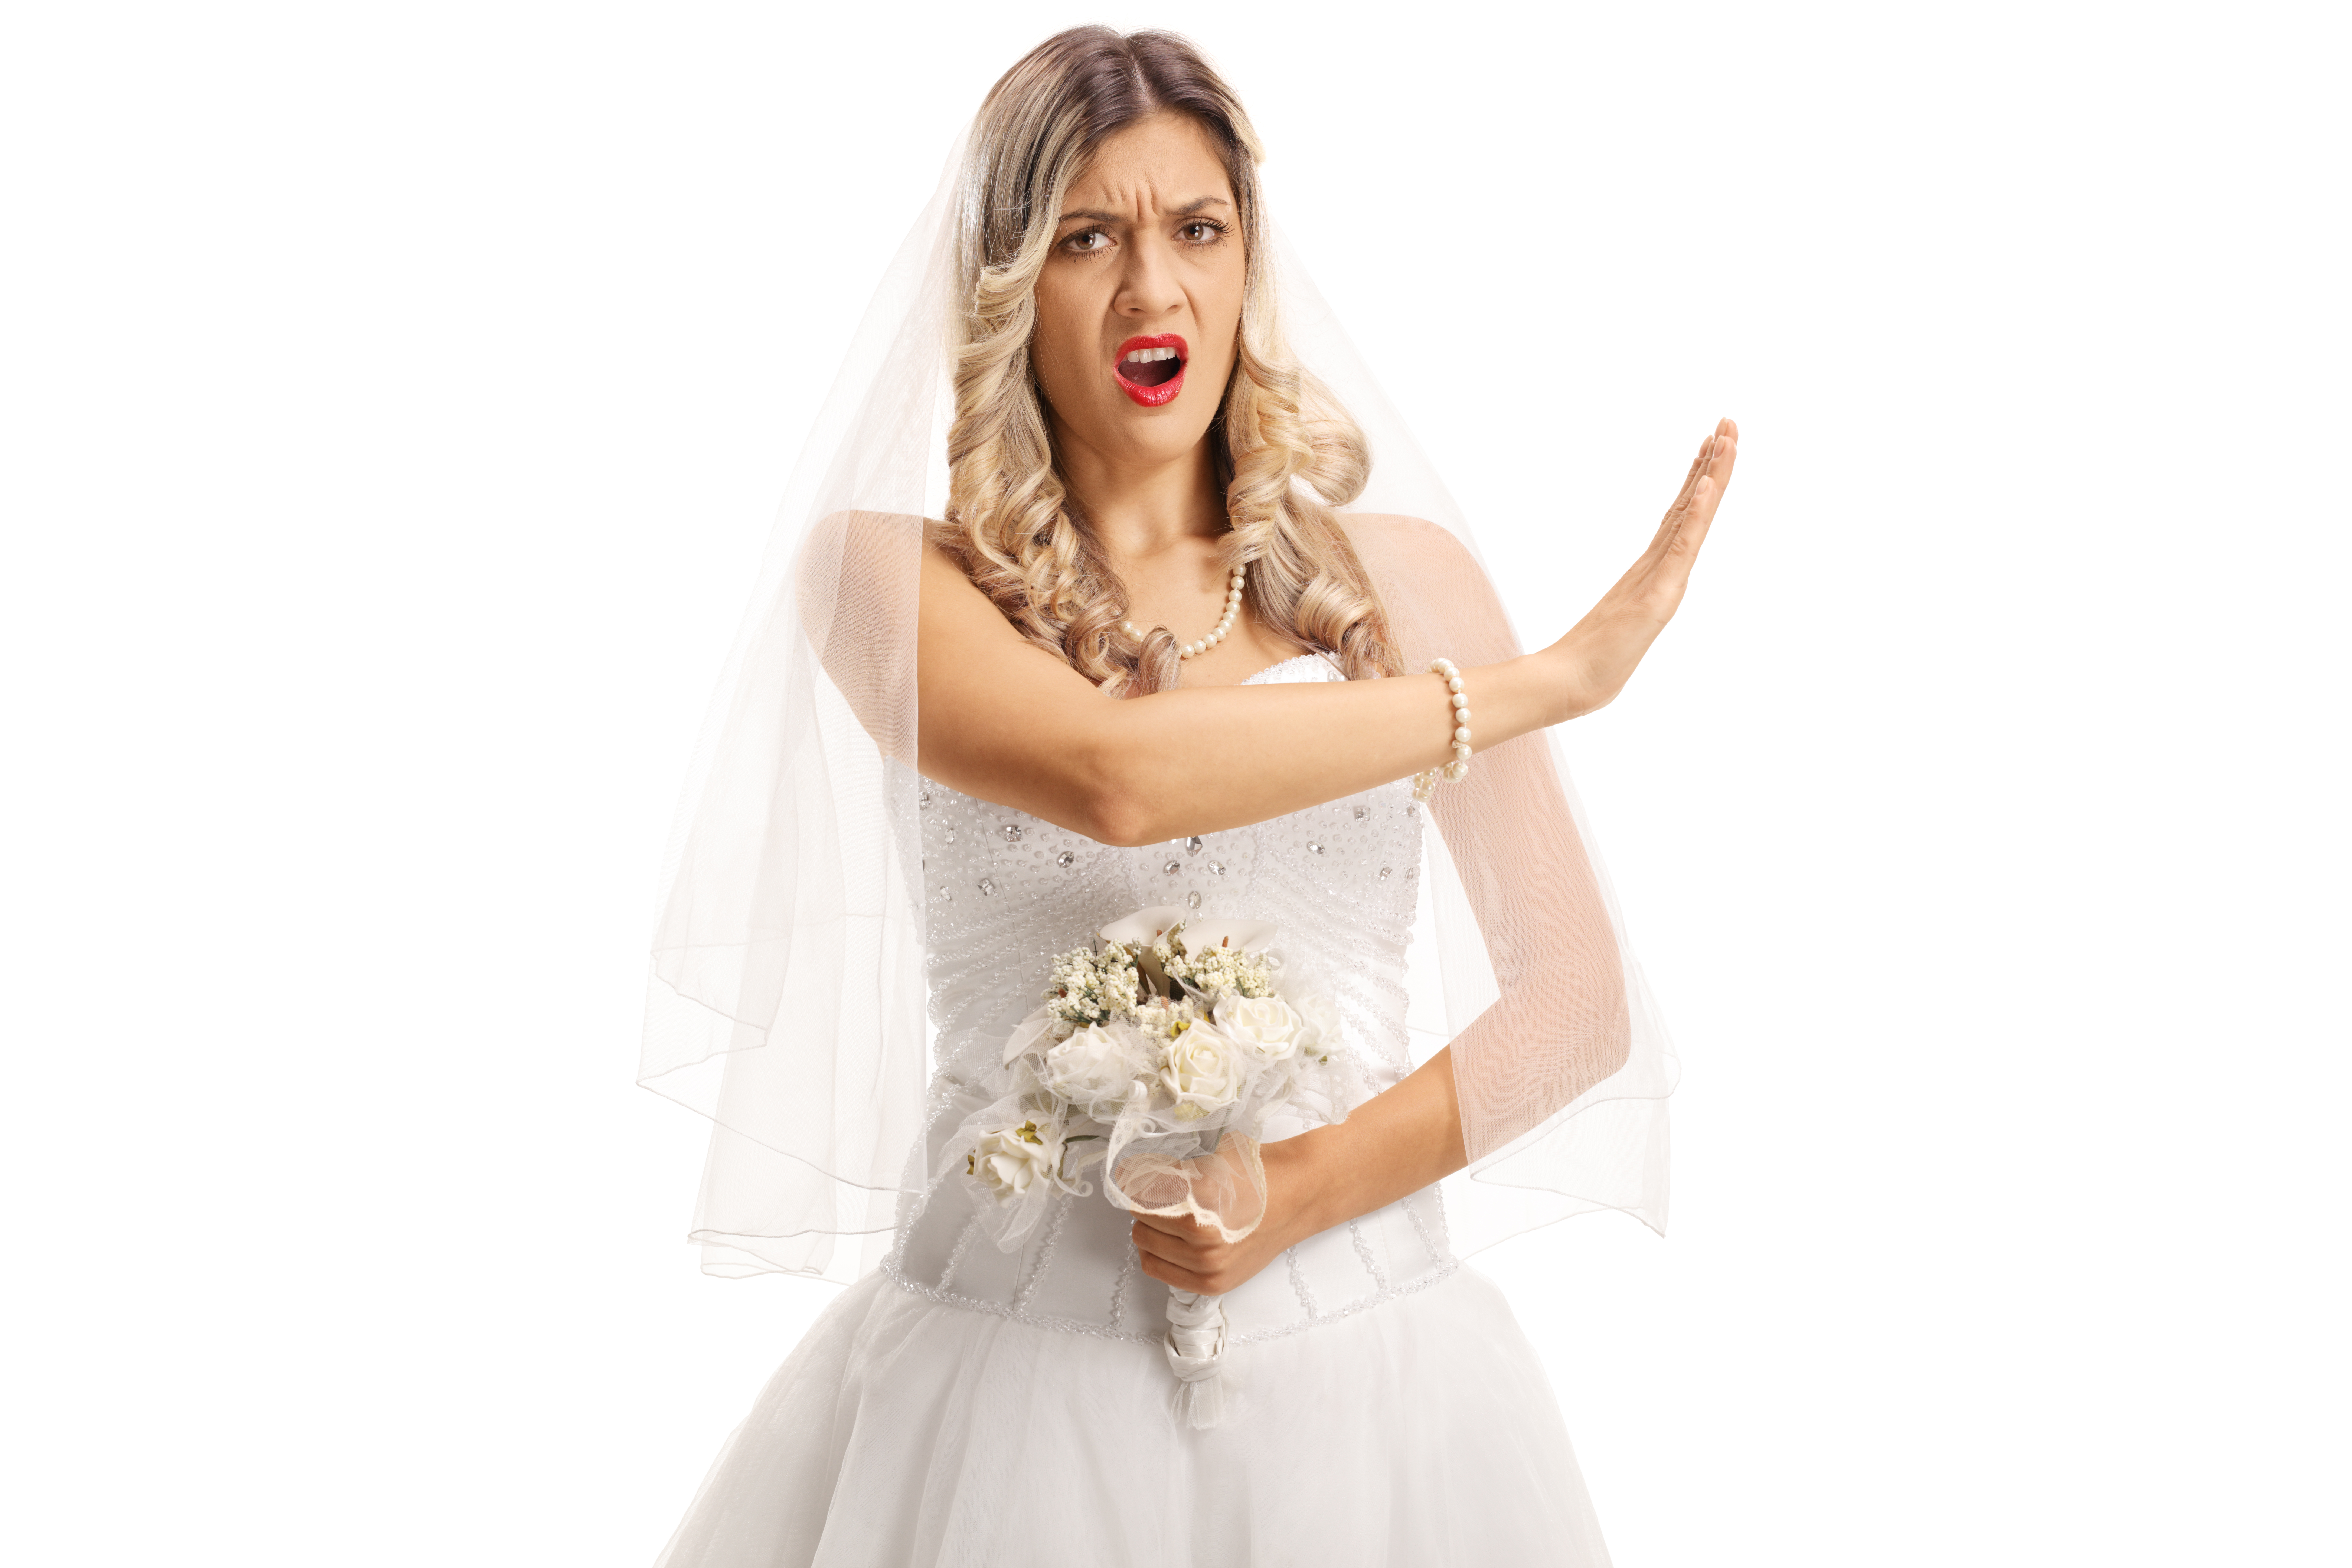 Eine wütende Braut, die jemanden zurechtweist | Quelle: Shutterstock